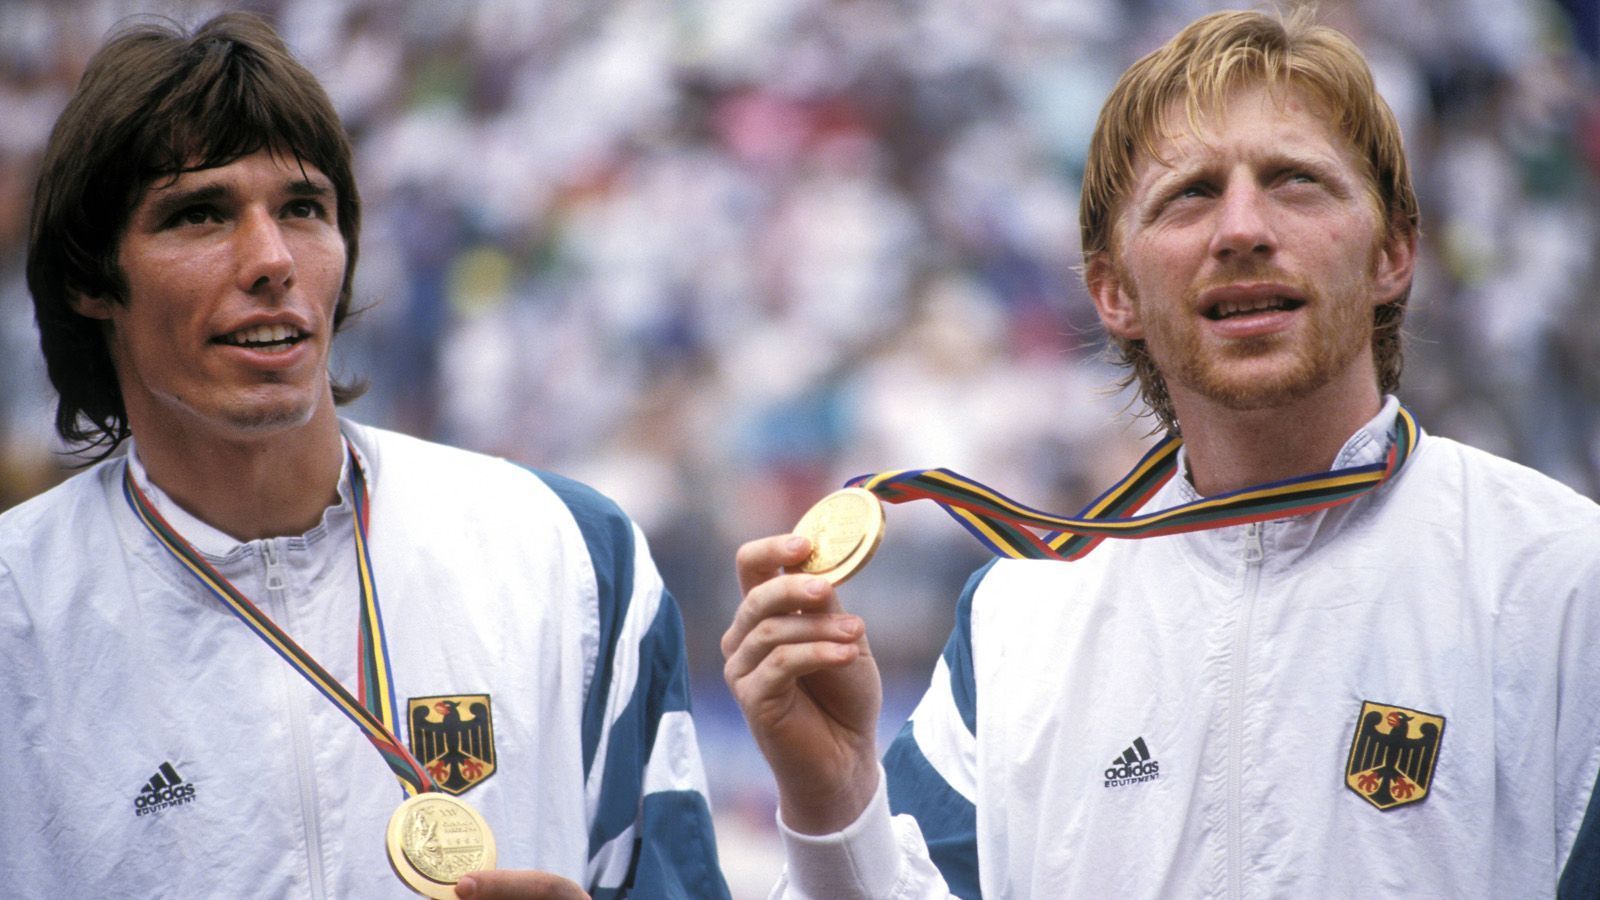 
                <strong>Olympia-Triumph mit Michael Stich</strong><br>
                Überhaupt war der sechsmalige Grand-Slam-Turnier-Sieger Becker nicht nur als Einzelsportler erfolgreich, sondern auch als Mannschaftssportler. Bei den Olympischen Spielen 1992 in Barcelona gewann er mit Michael Stich, der ansonsten oft als sein großer Rivale galt, die Goldmedaille im Doppel.
              